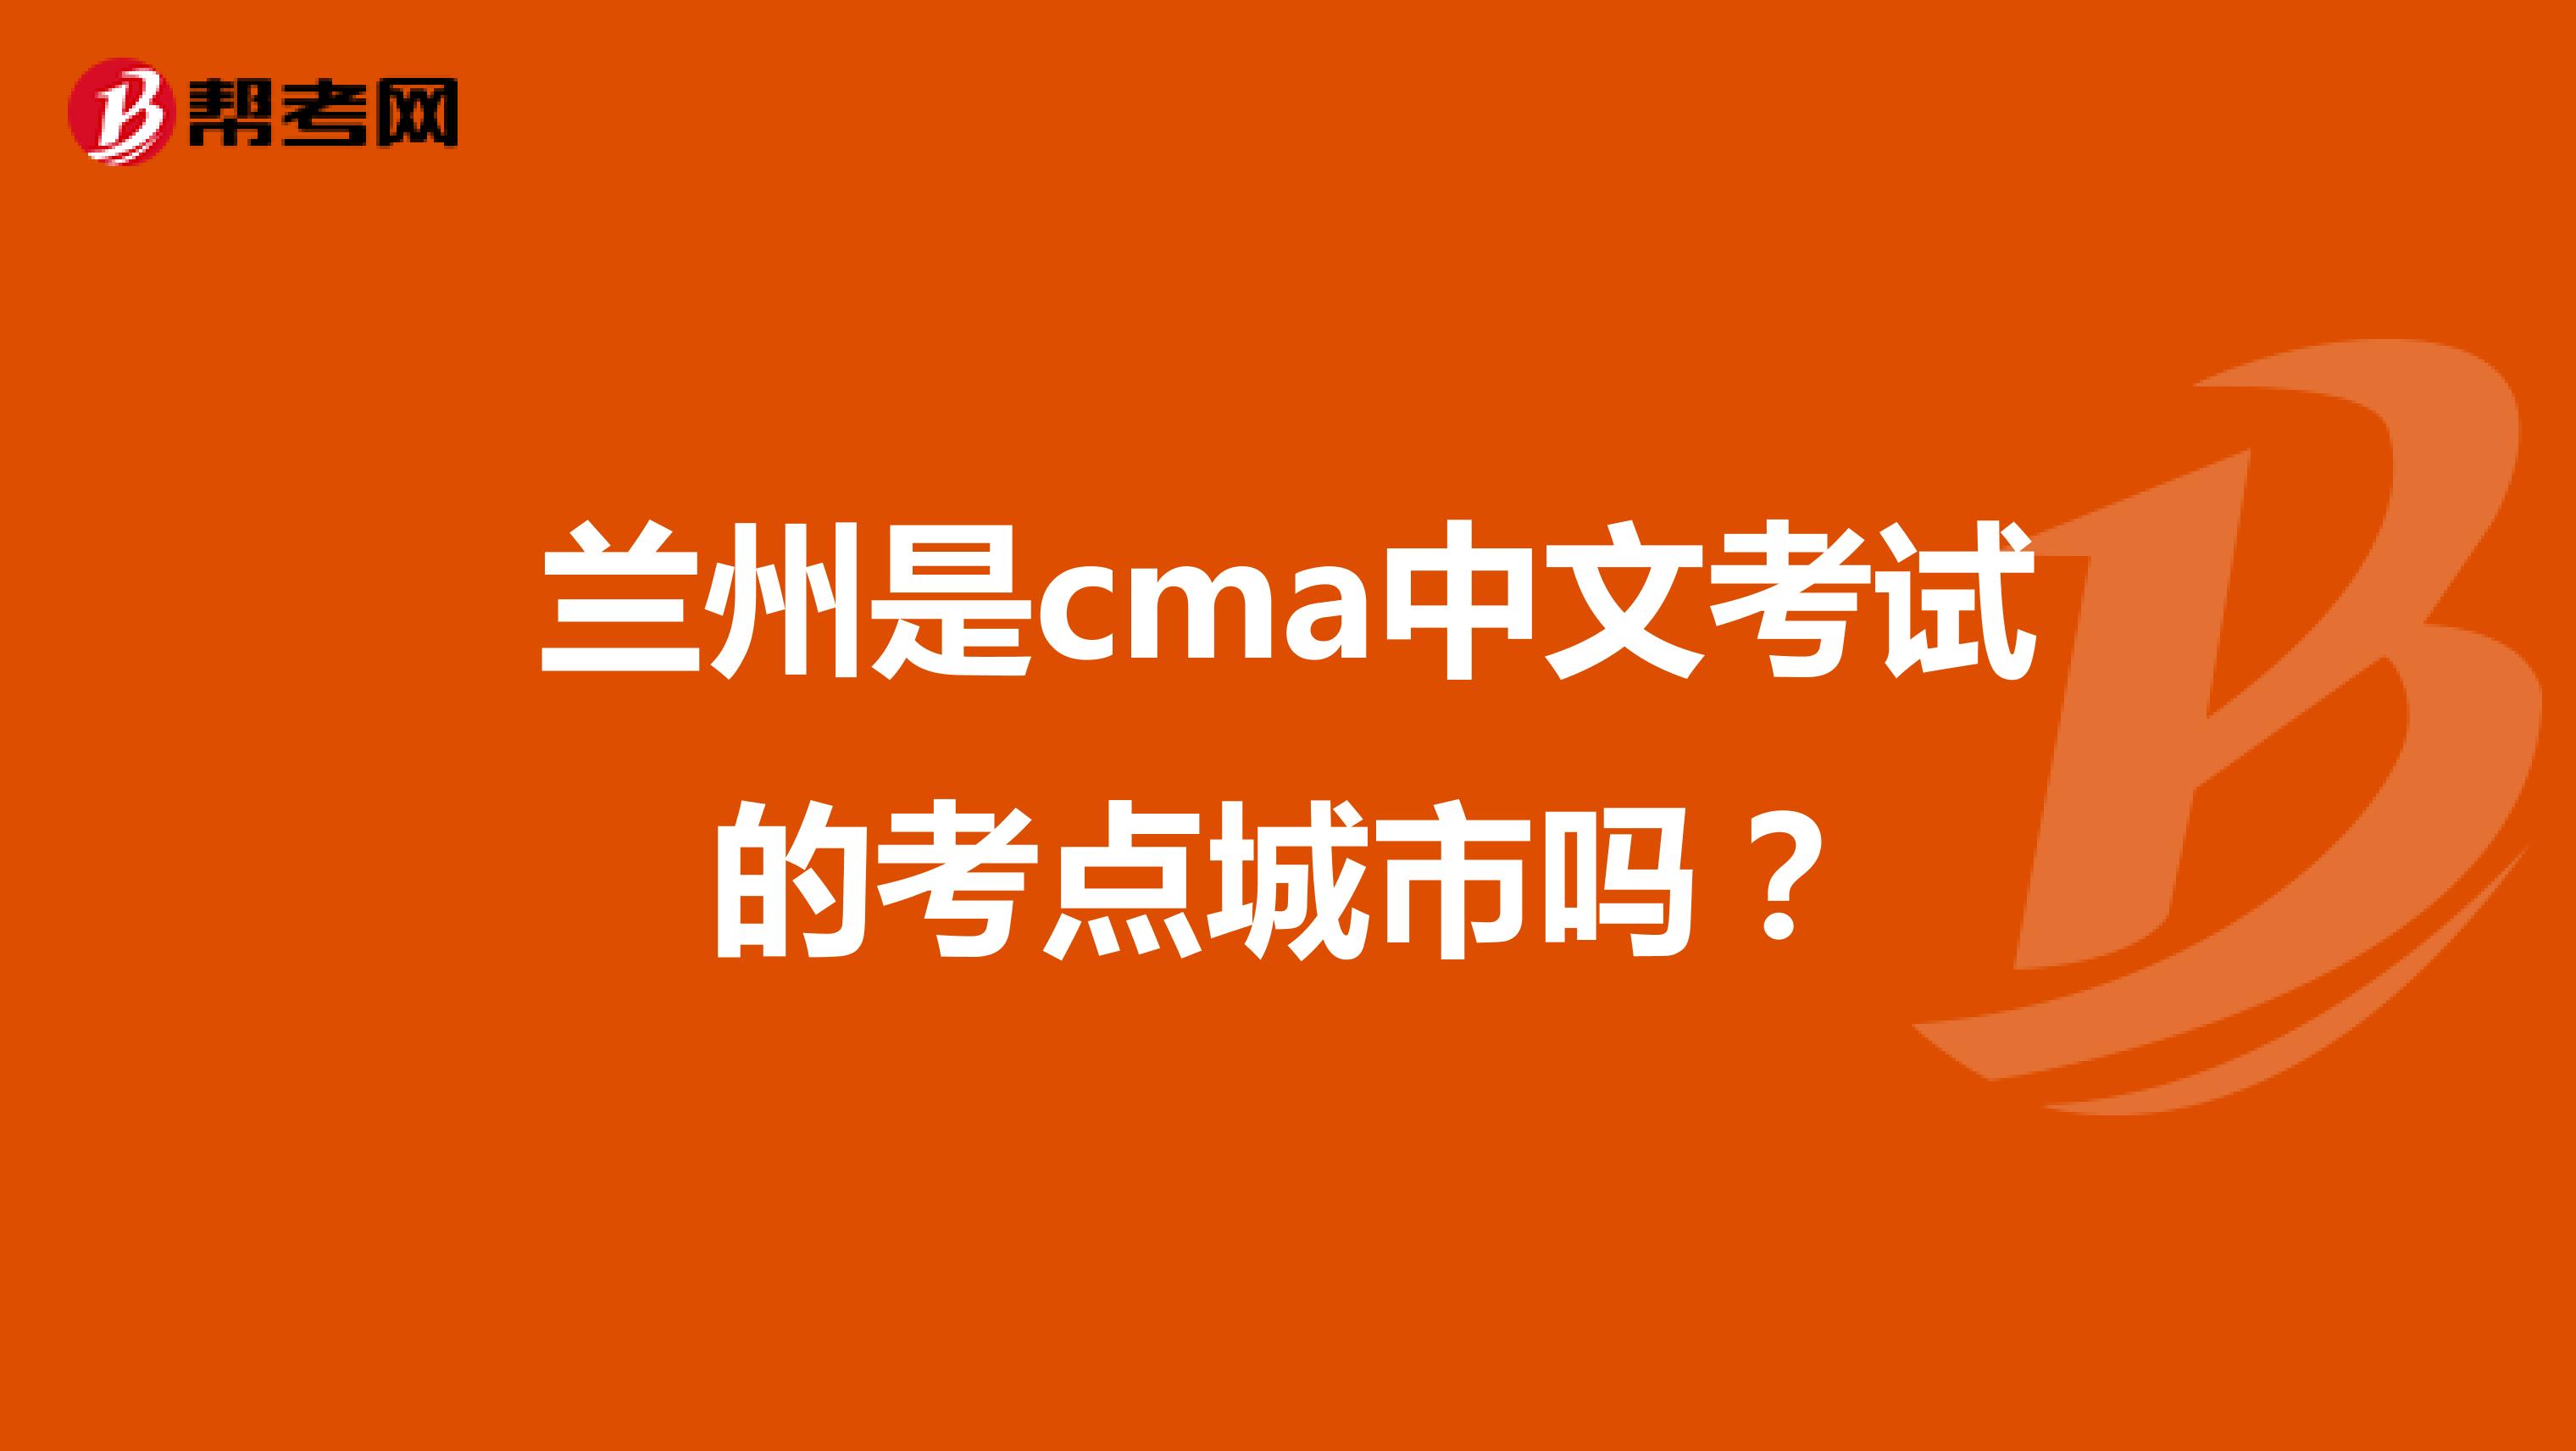 兰州是cma中文考试的考点城市吗？